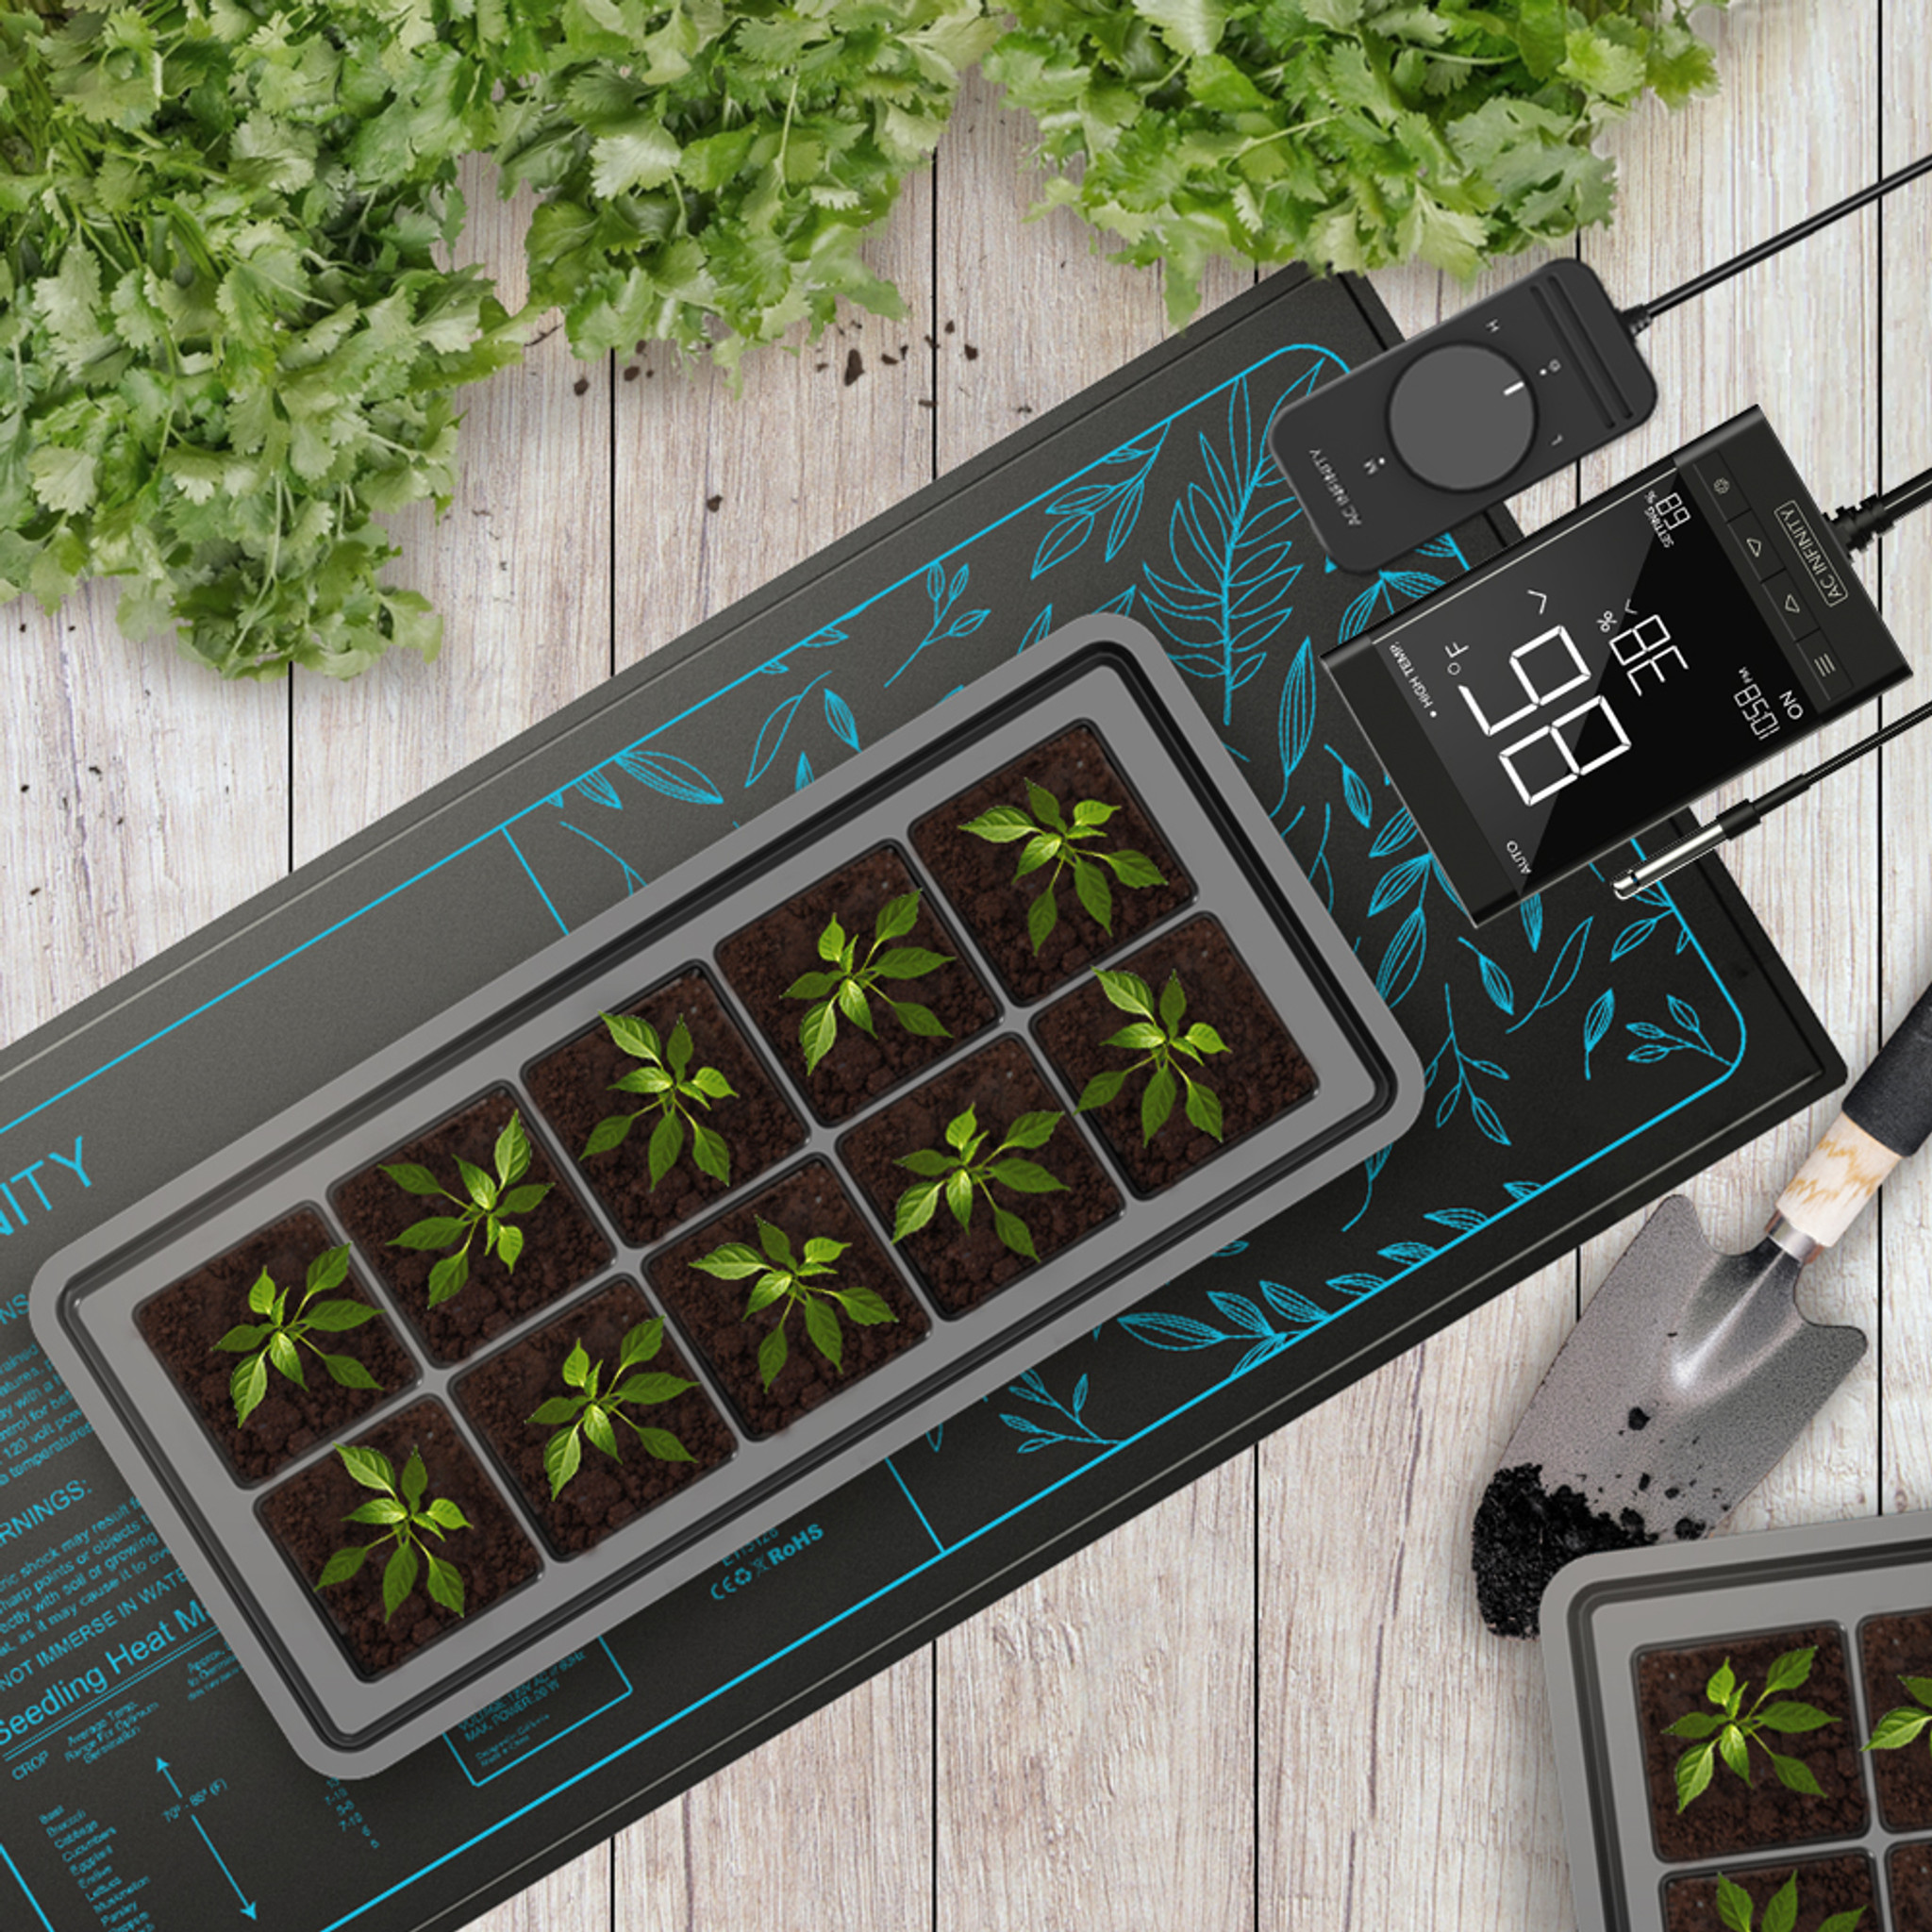 VIVOSUN Hydroponic Seedling Heat Mat for Indoor Gardening & Reviews